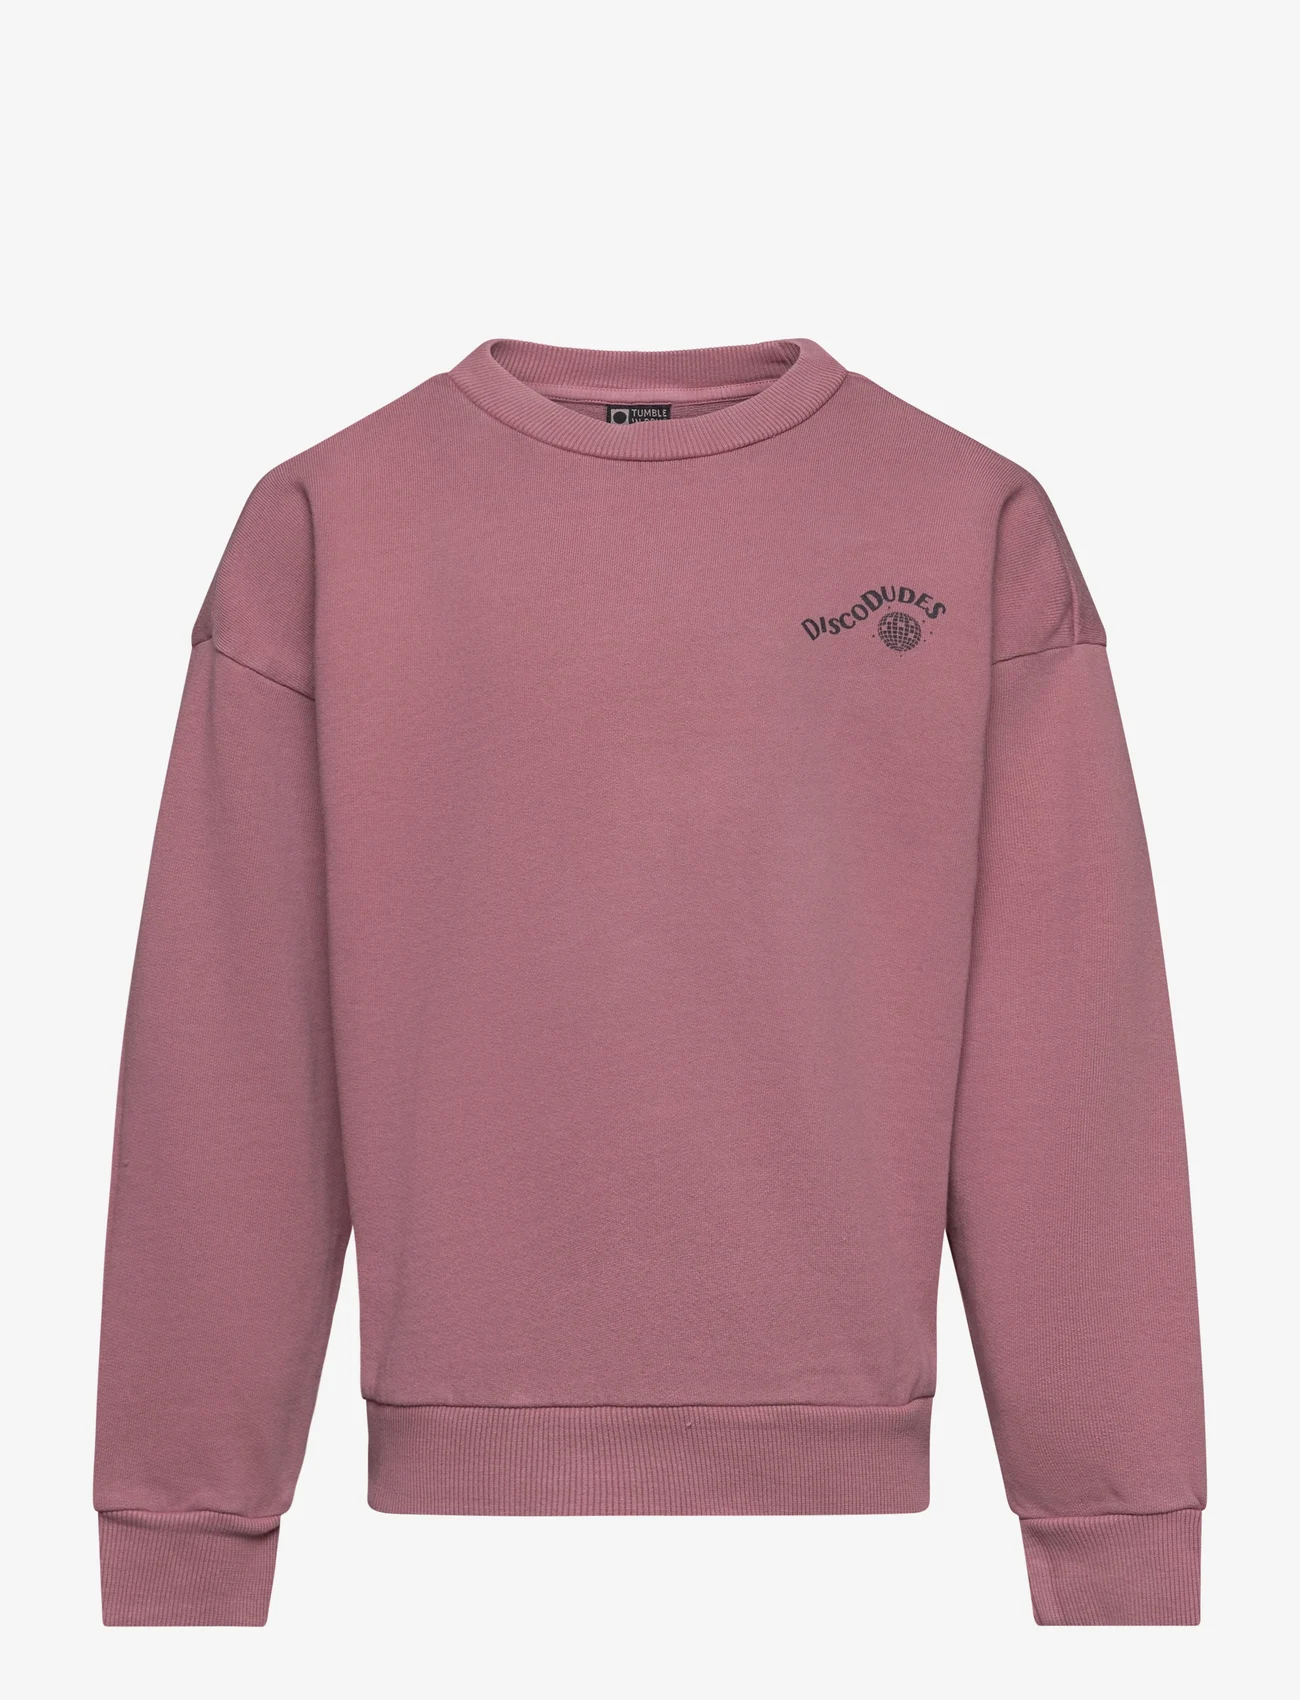 TUMBLE 'N DRY - San Joaquin - sweatshirts - pink - 0